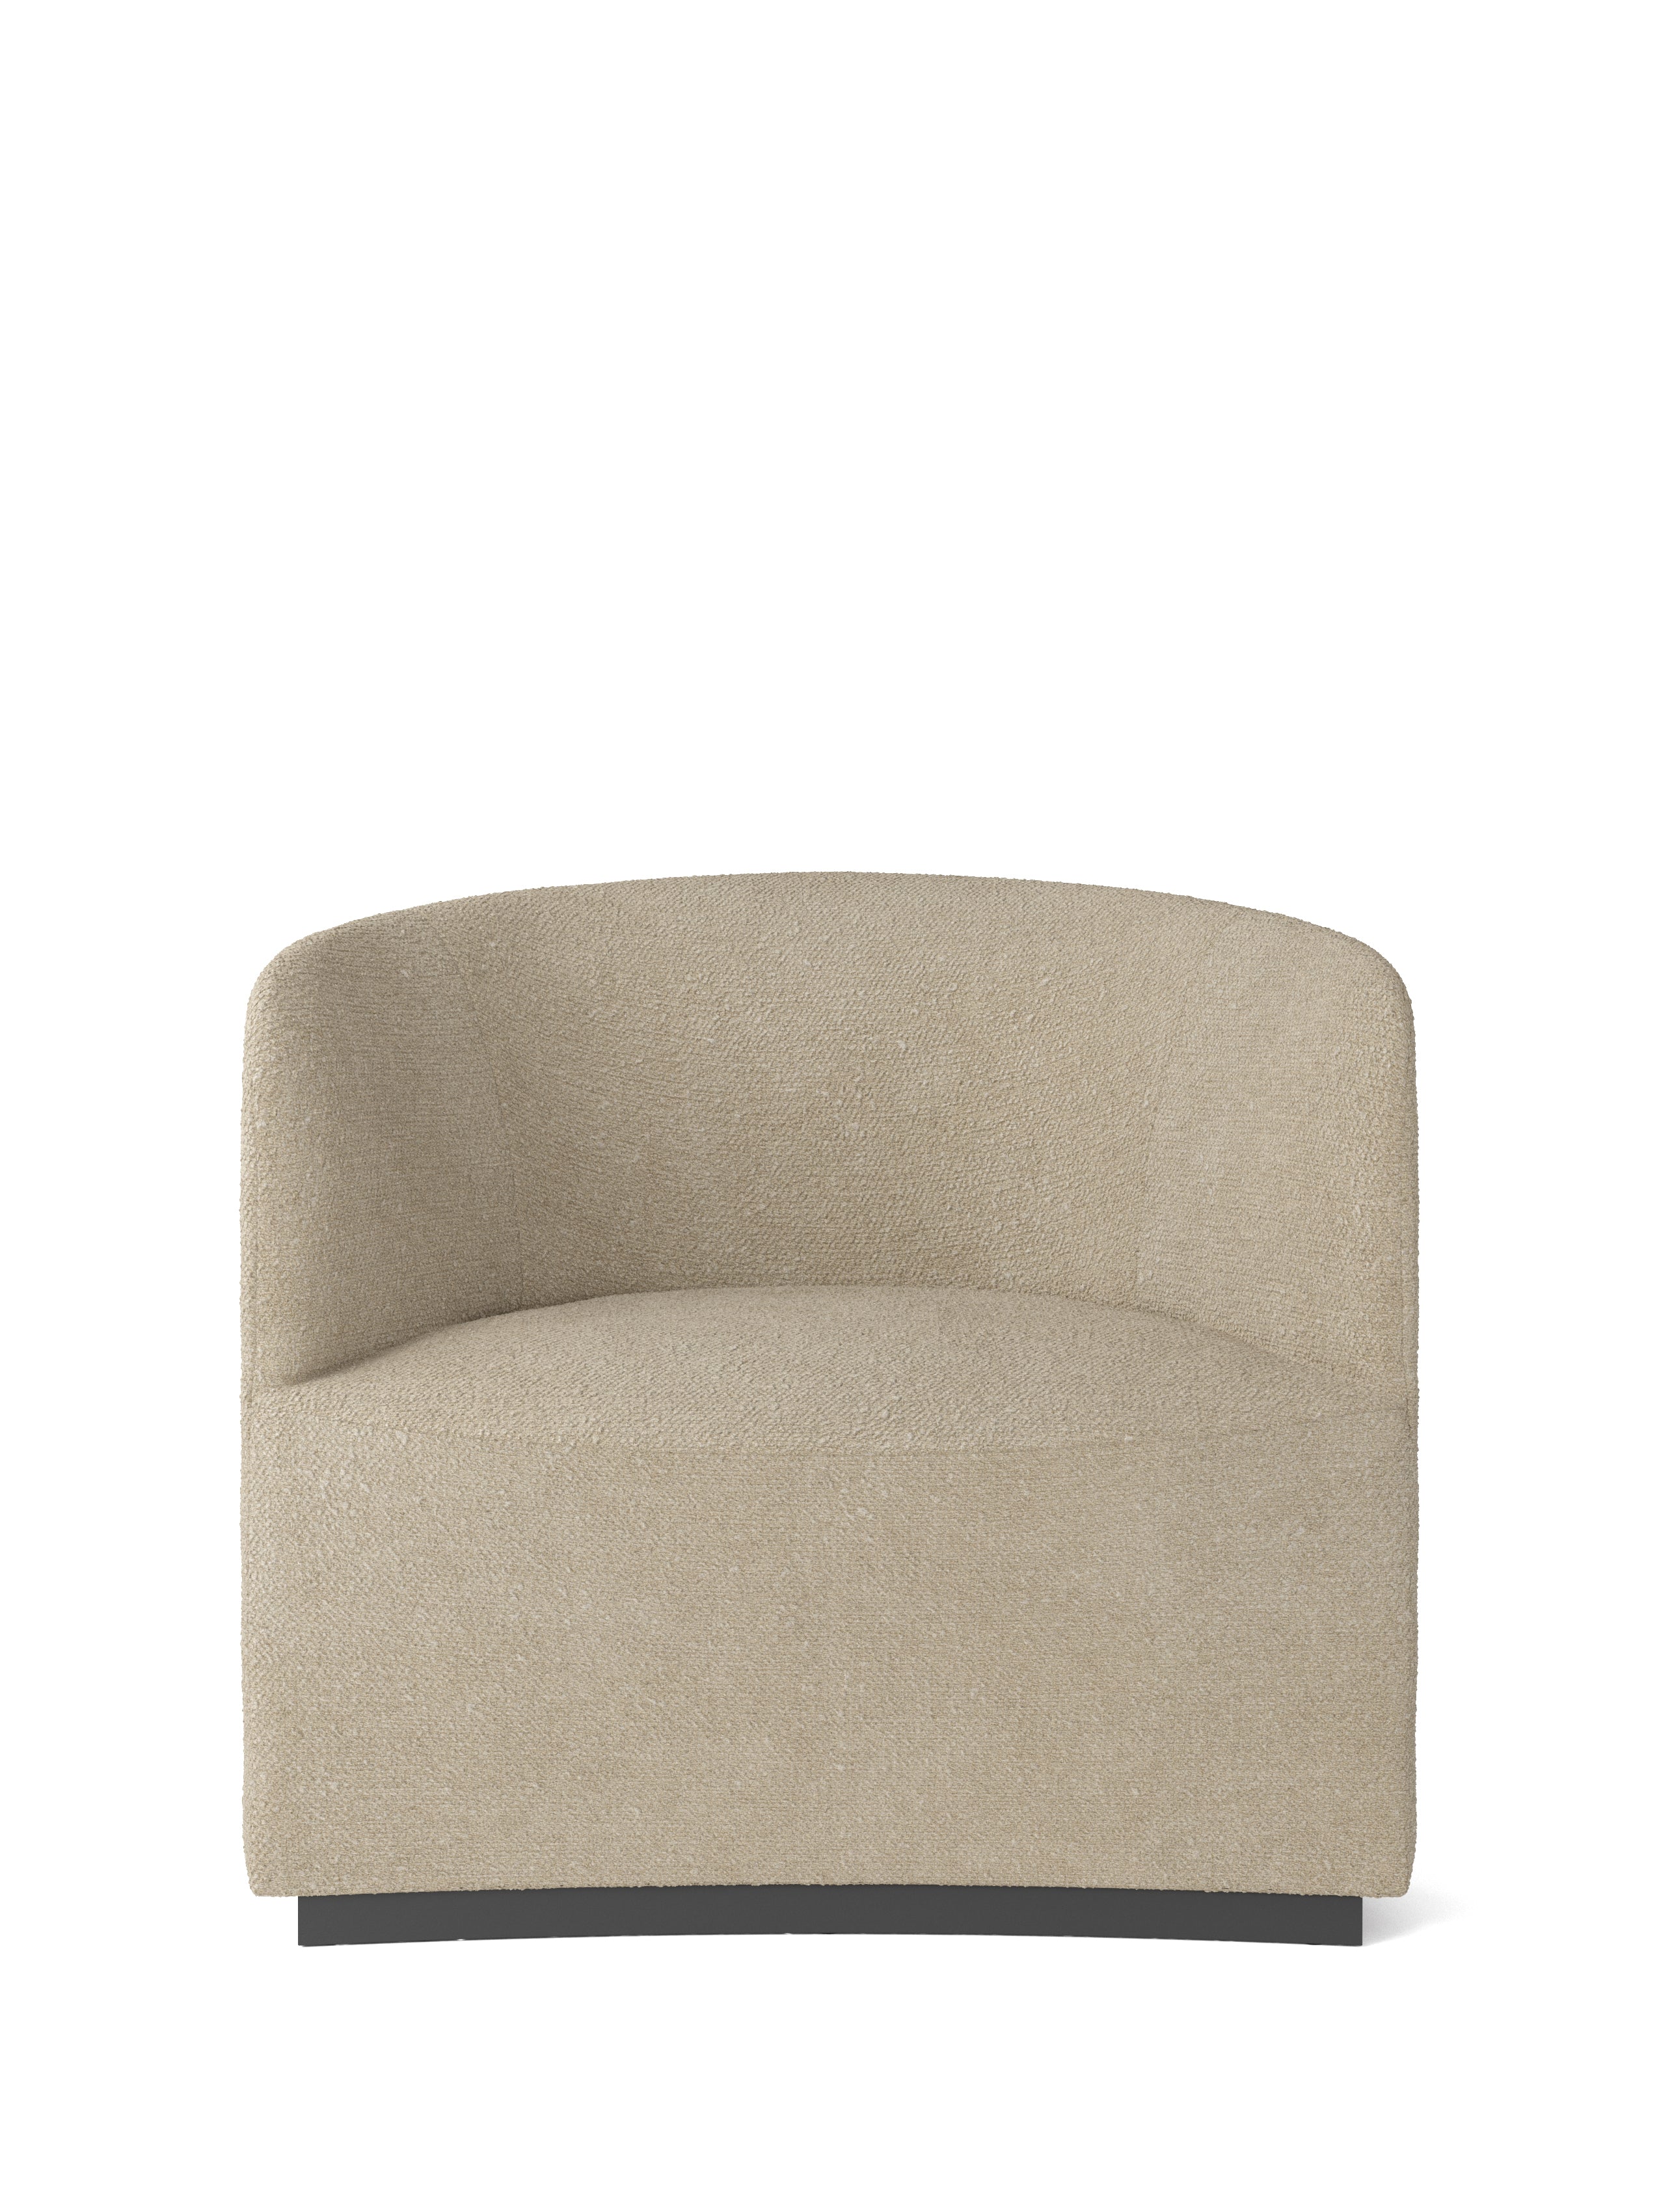 Audo Copenhagen Tearoom Lounge Chair in Boucle Beige 02